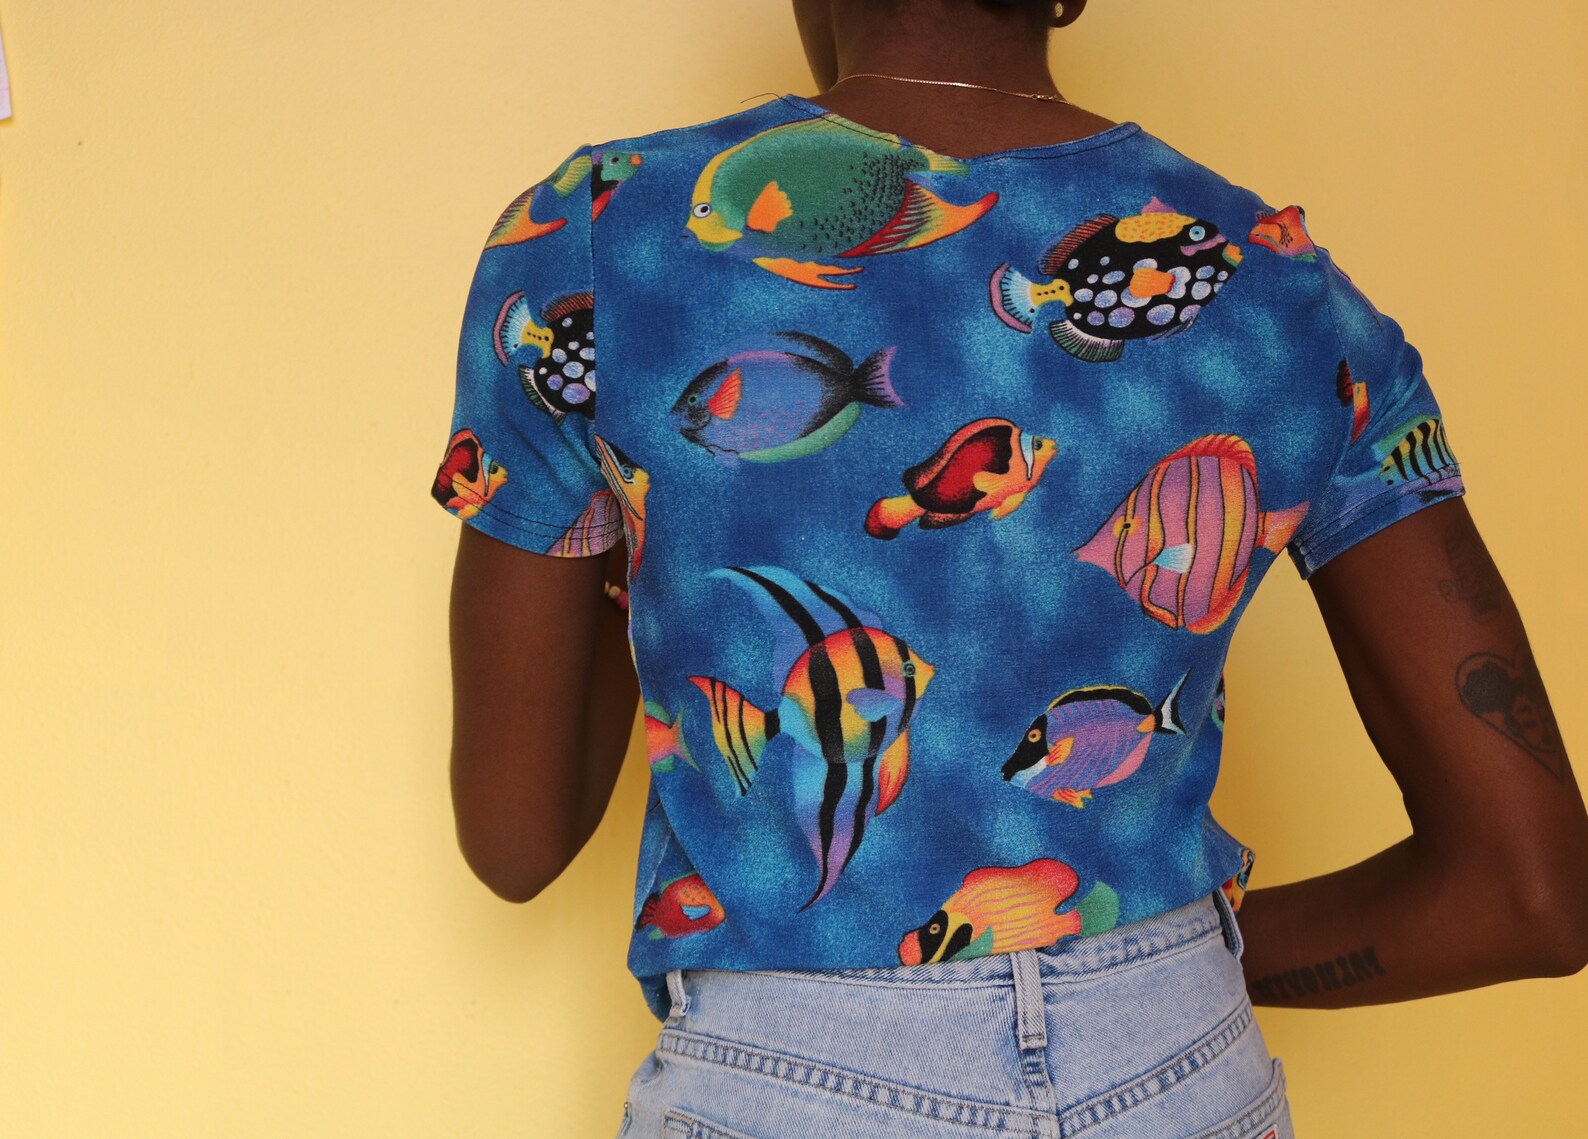 Vintage 90s Stretchy Fish Shirt | Etsy